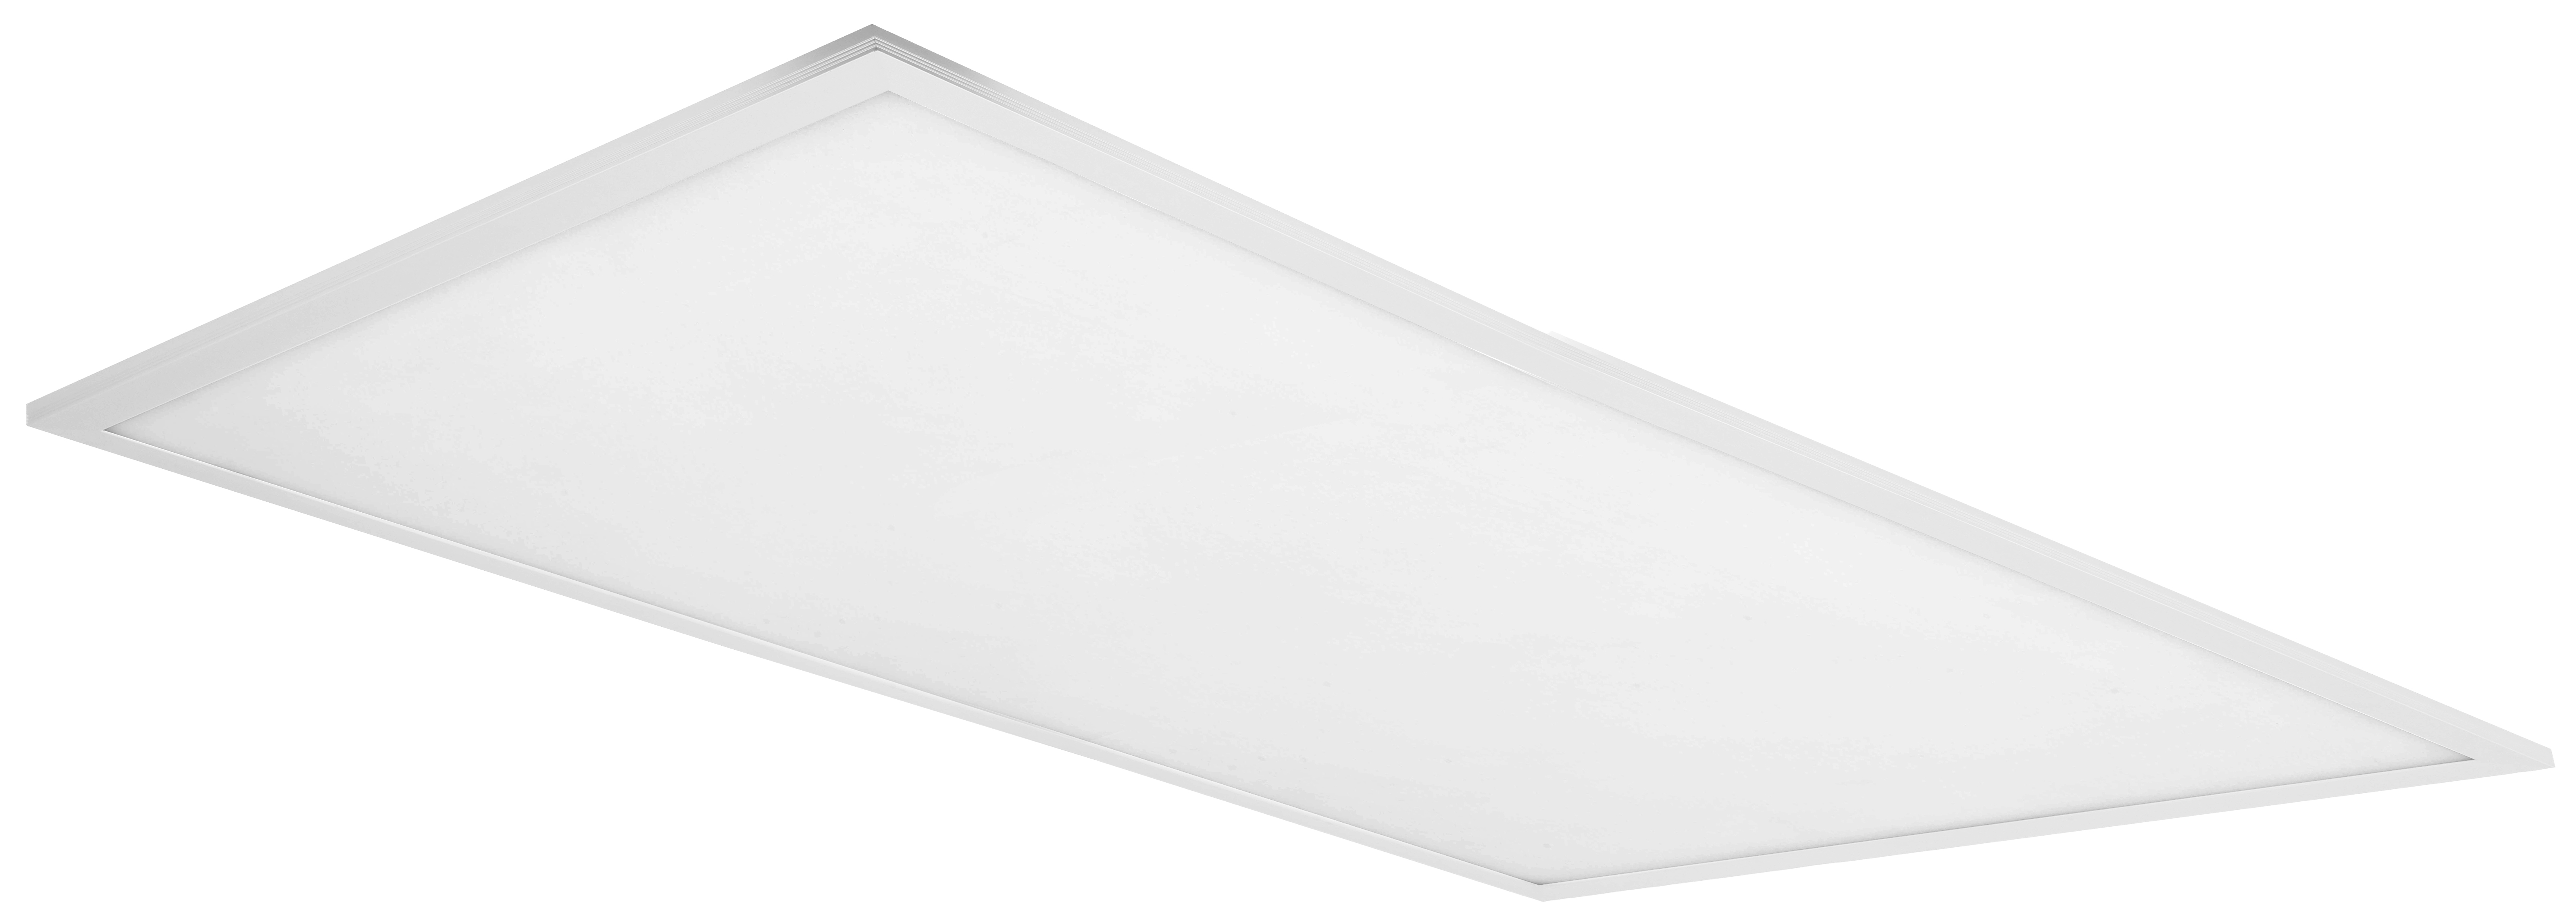 4Lite Rectangular 1200 x 600mm White LED Backlit Panel - 46W